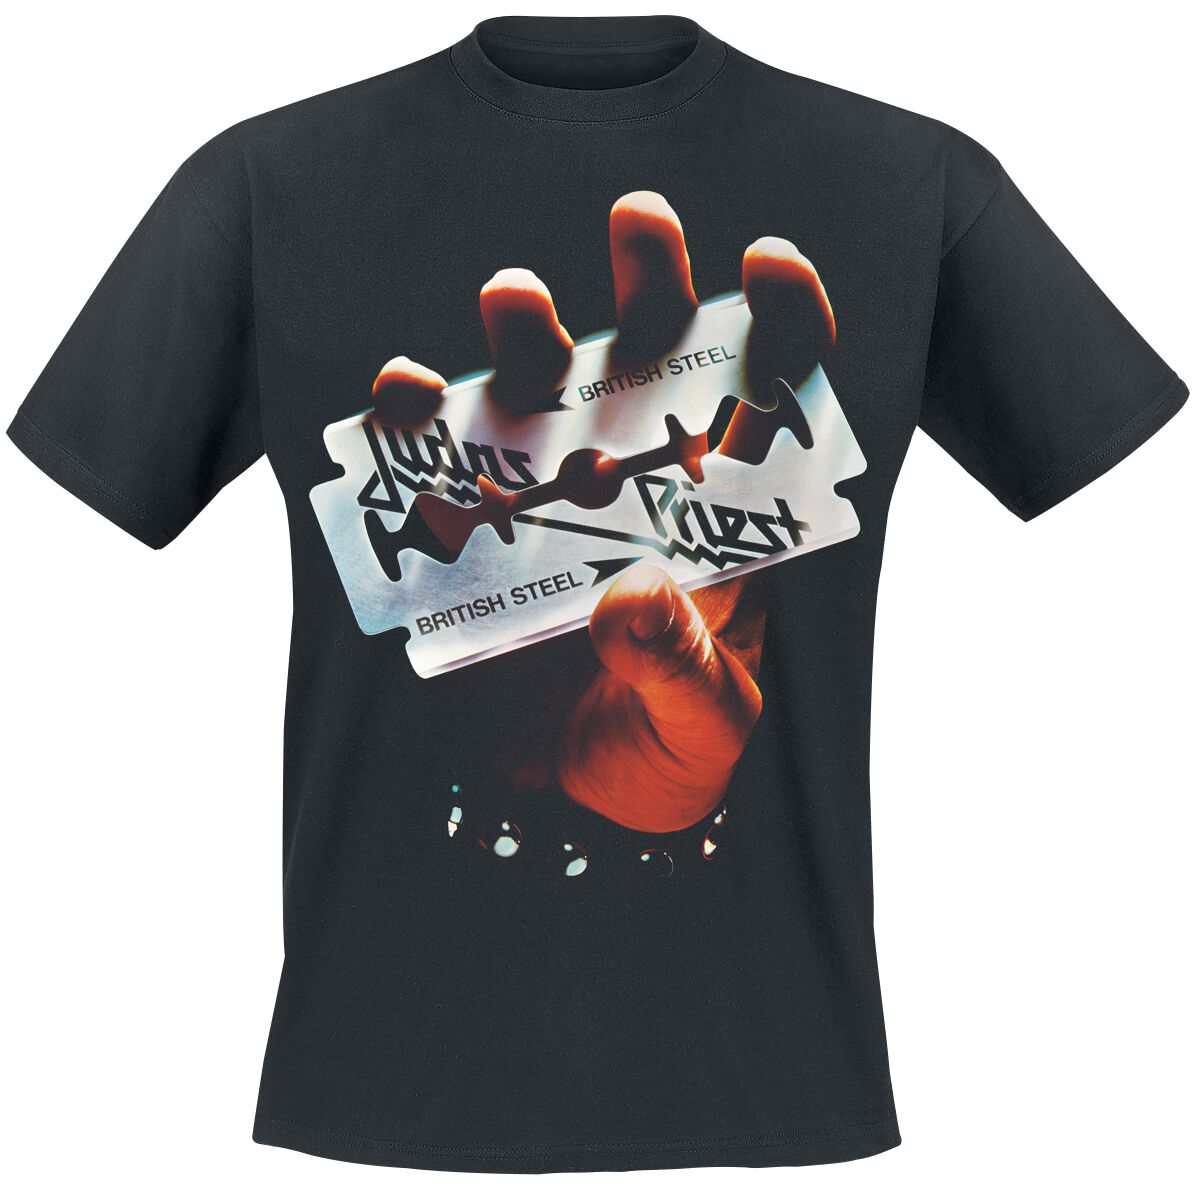 Judas Priest T-Shirt - British Steel Anniversary 2020 - S bis M - für Männer - Größe M - schwarz  - Lizenziertes Merchandise!